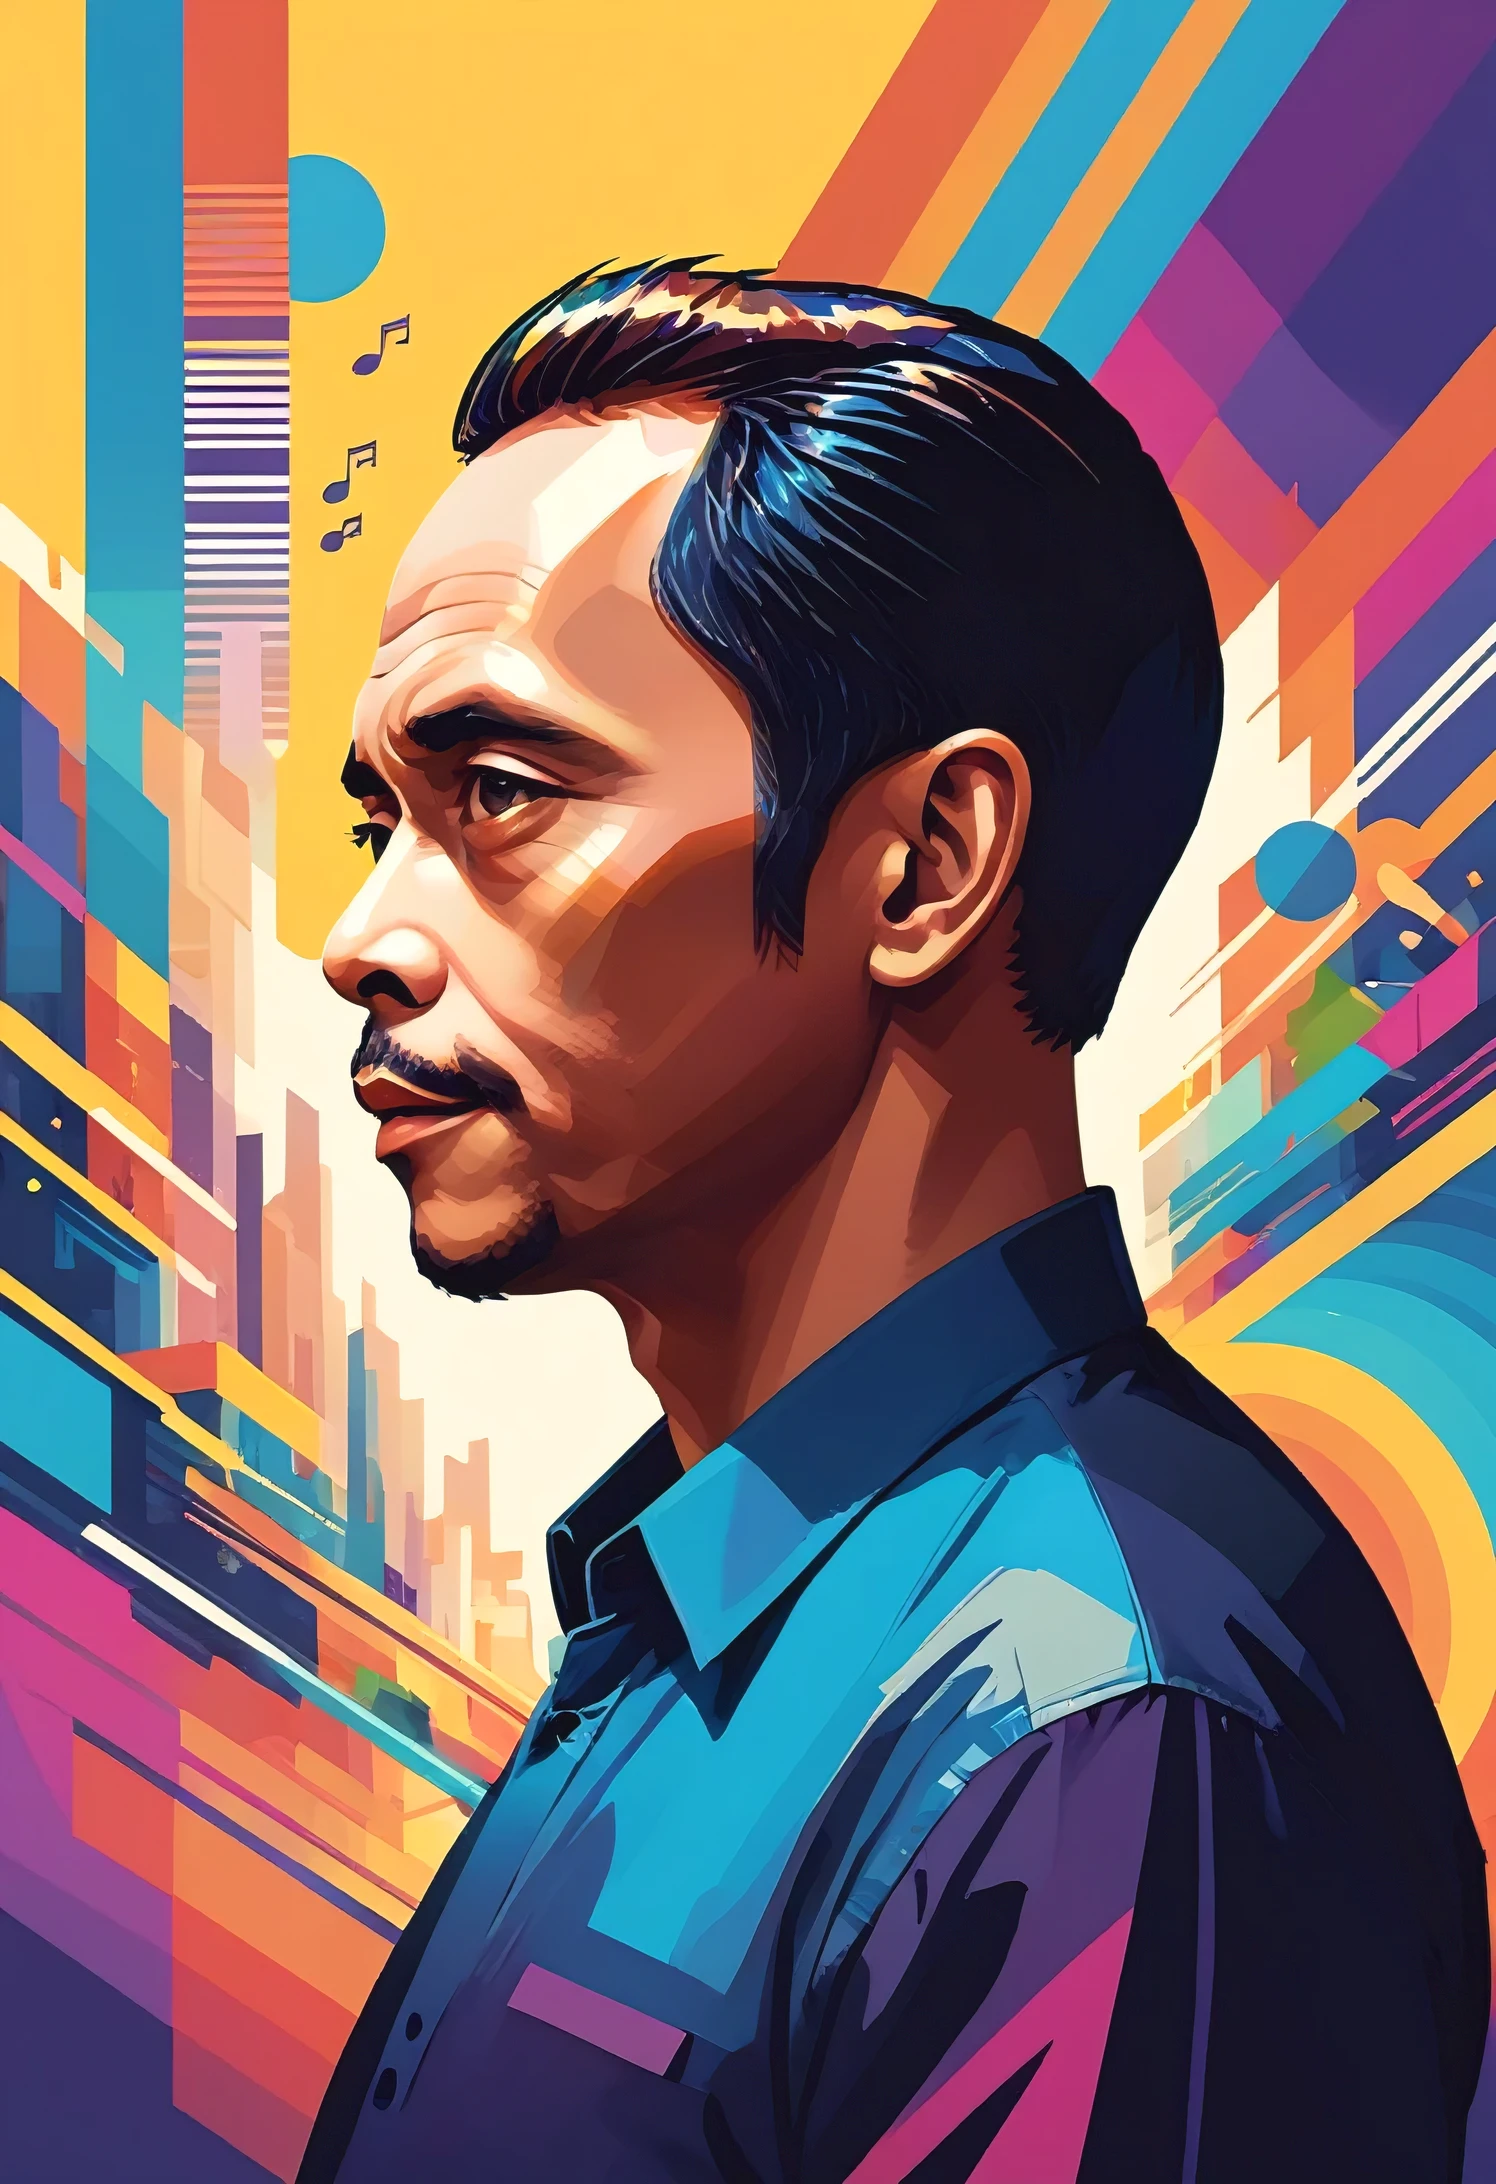 コンセプトポスター インドネシア 45歳男性, 音符の半身像, トム・ホエレンによるデジタルアート, 太字, 活気のある, 彩度の高い色, ワパップ,詳細なfac,鮮やかなカラーパレット